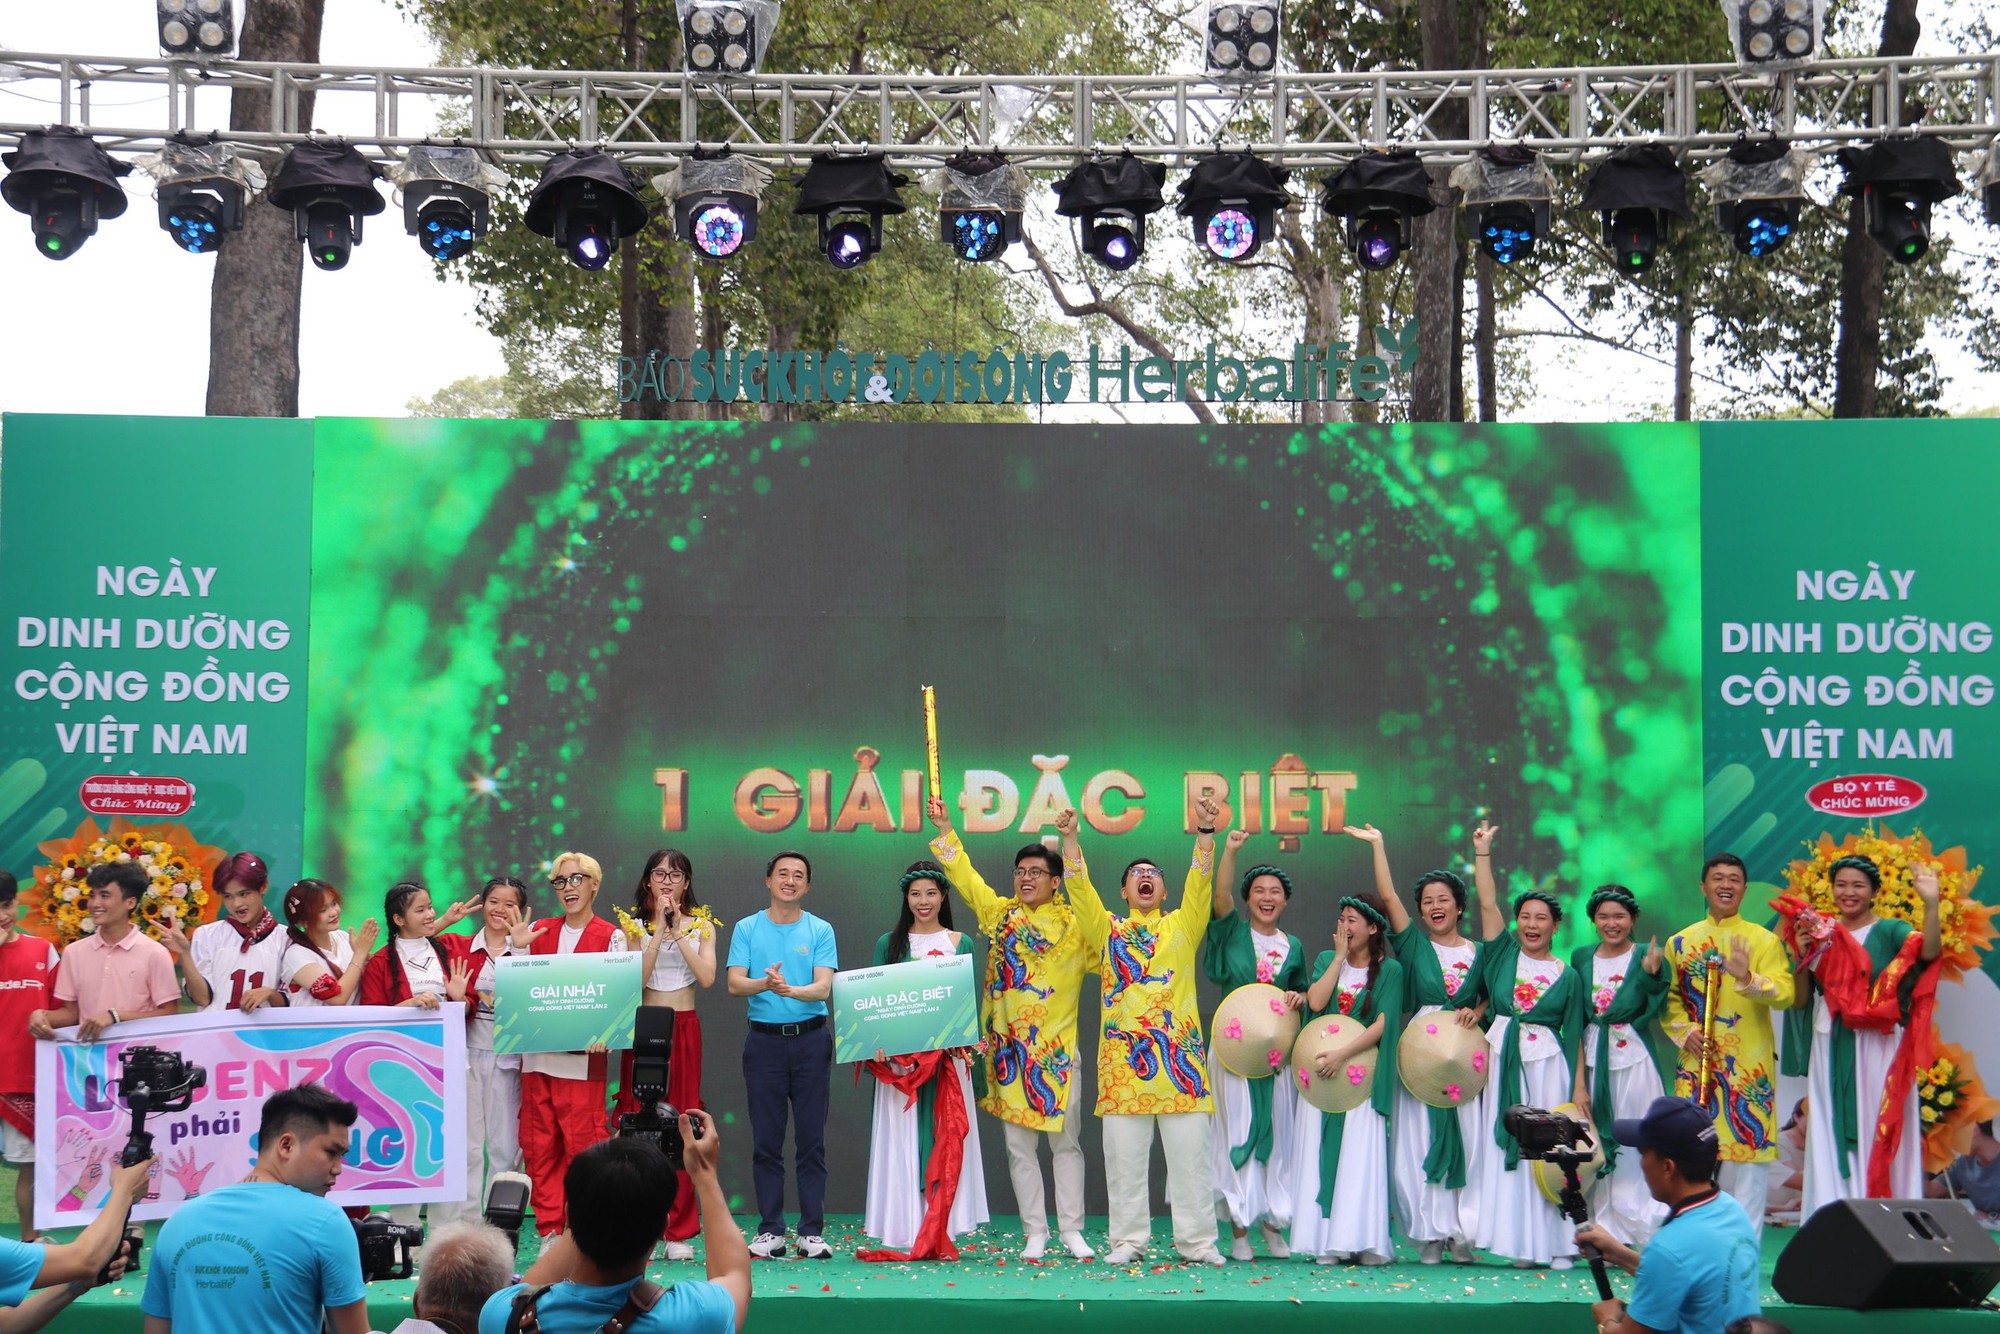 Ngày Dinh dưỡng cộng đồng Việt Nam lần 2 cổ vũ toàn dân thực hành lối sống năng động, khoa học- Ảnh 24.